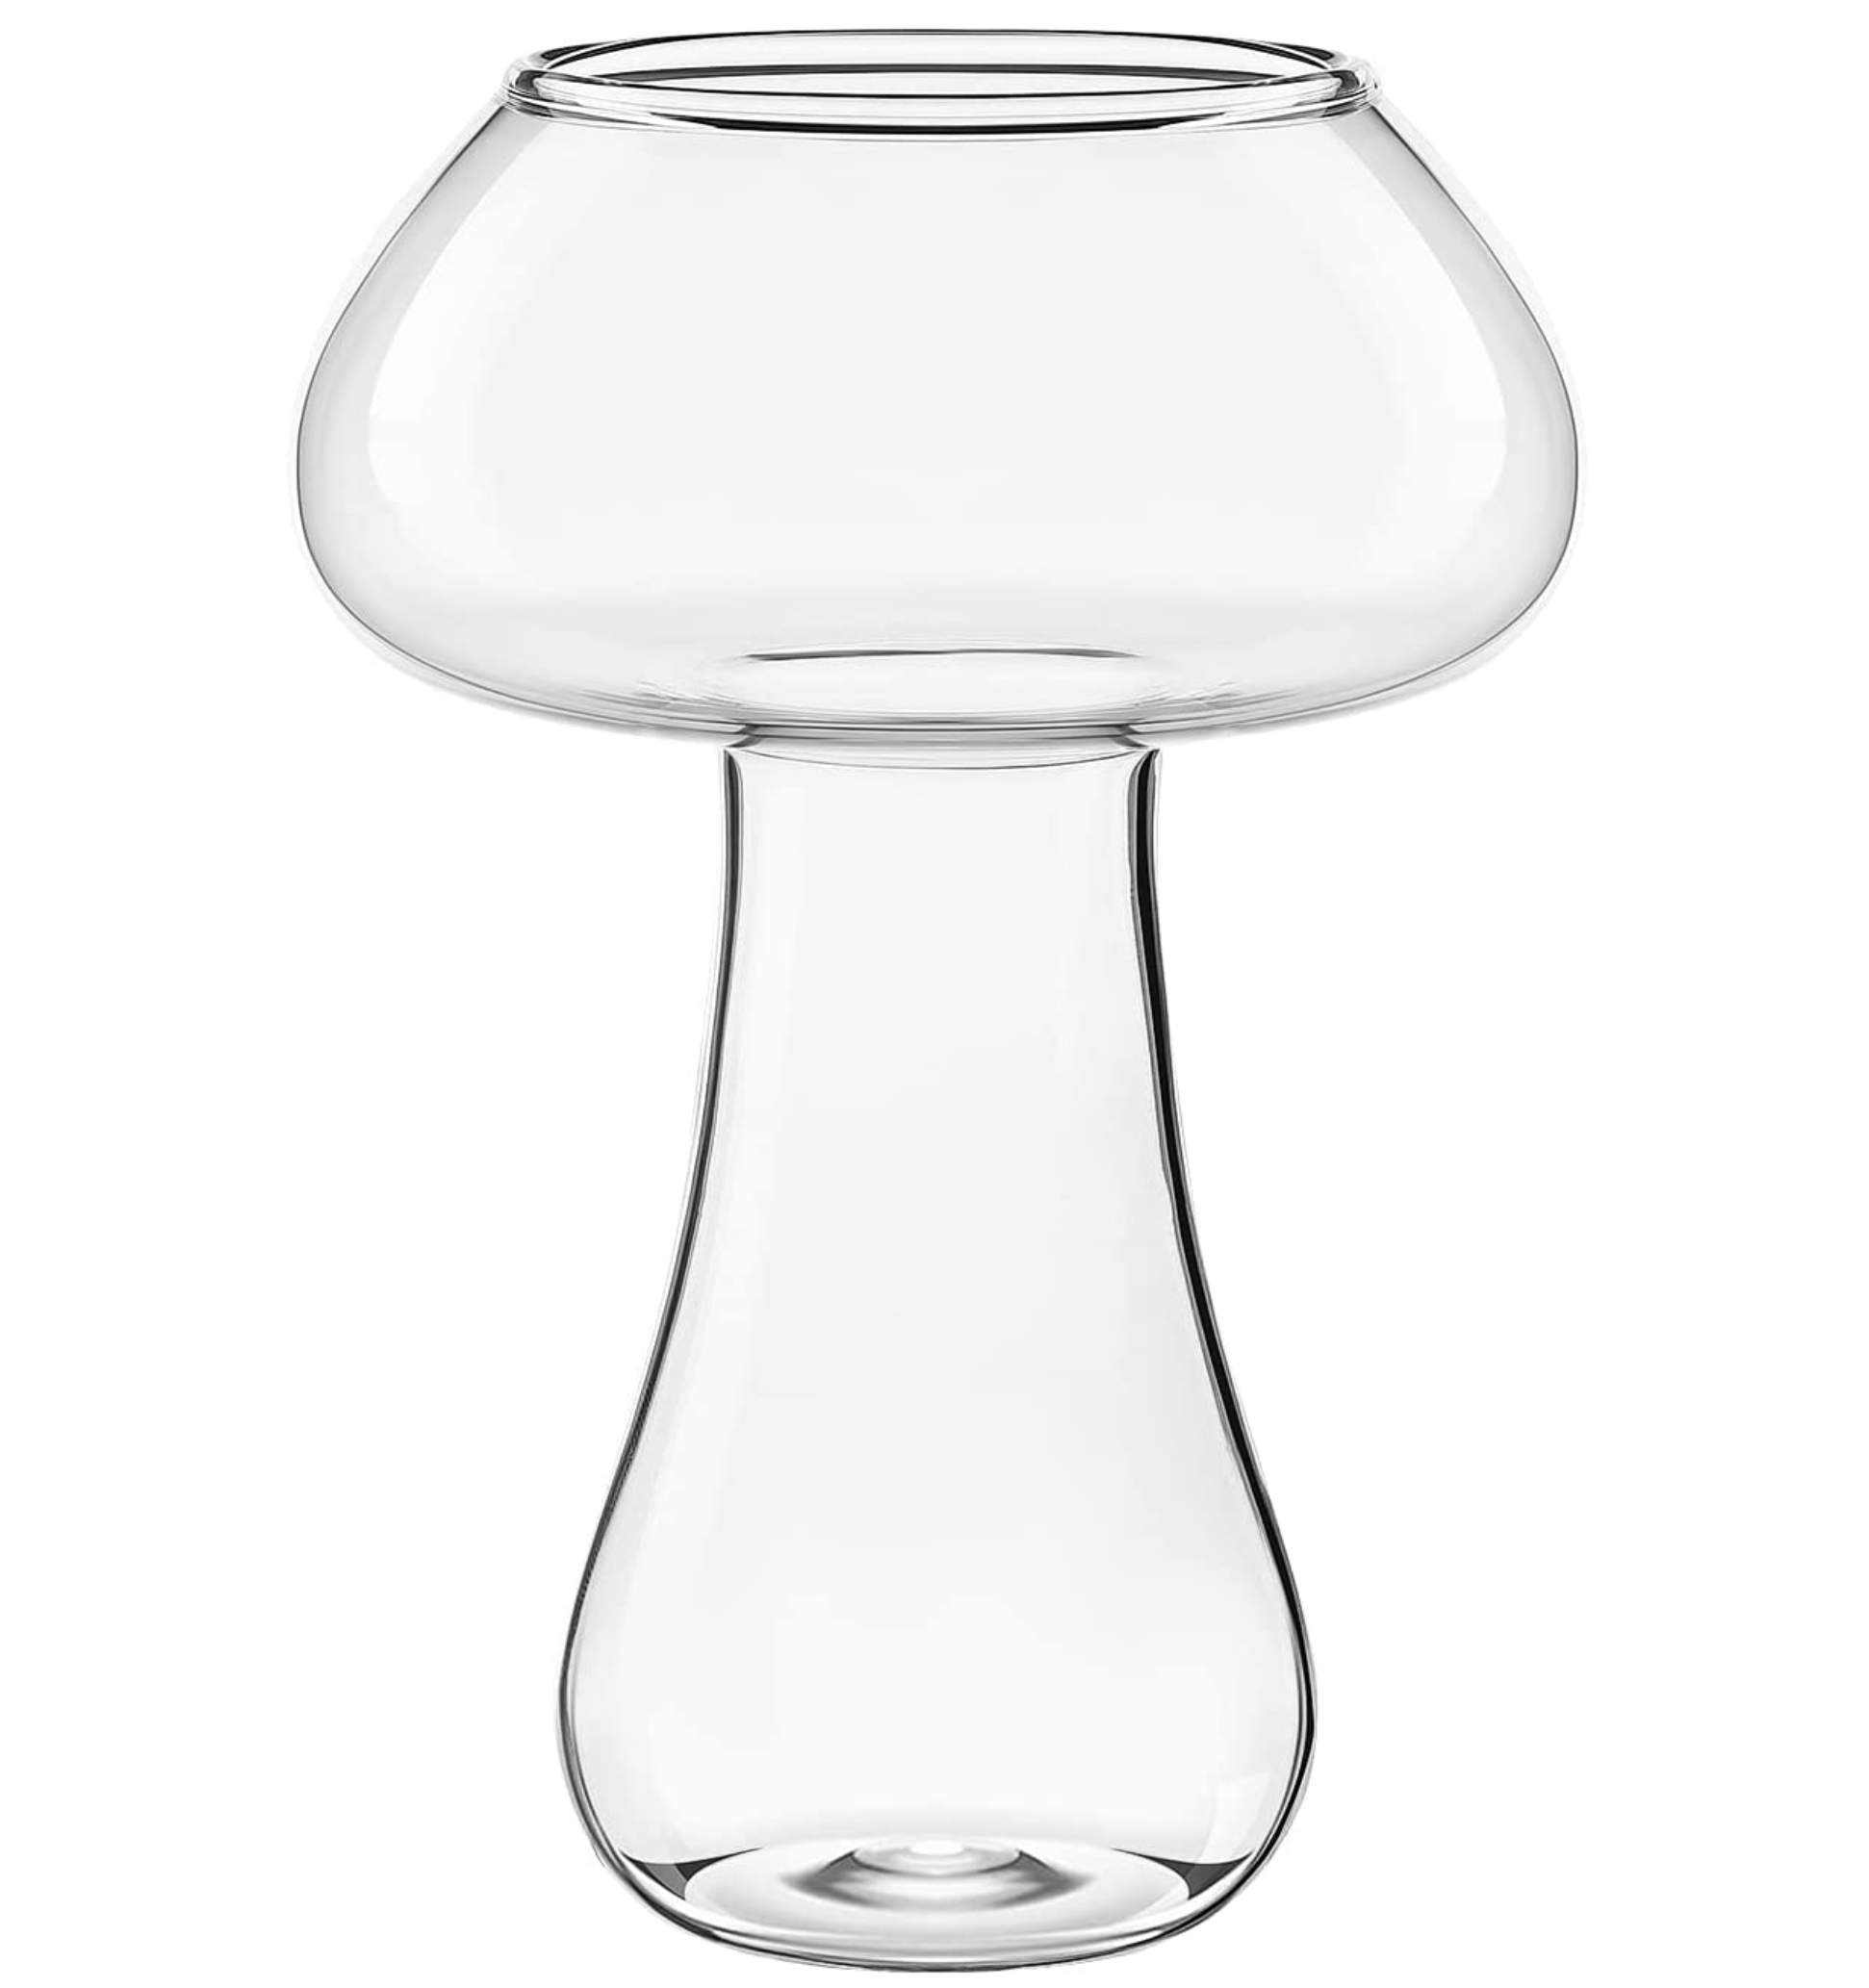  Glass Mushroom Bud Vase